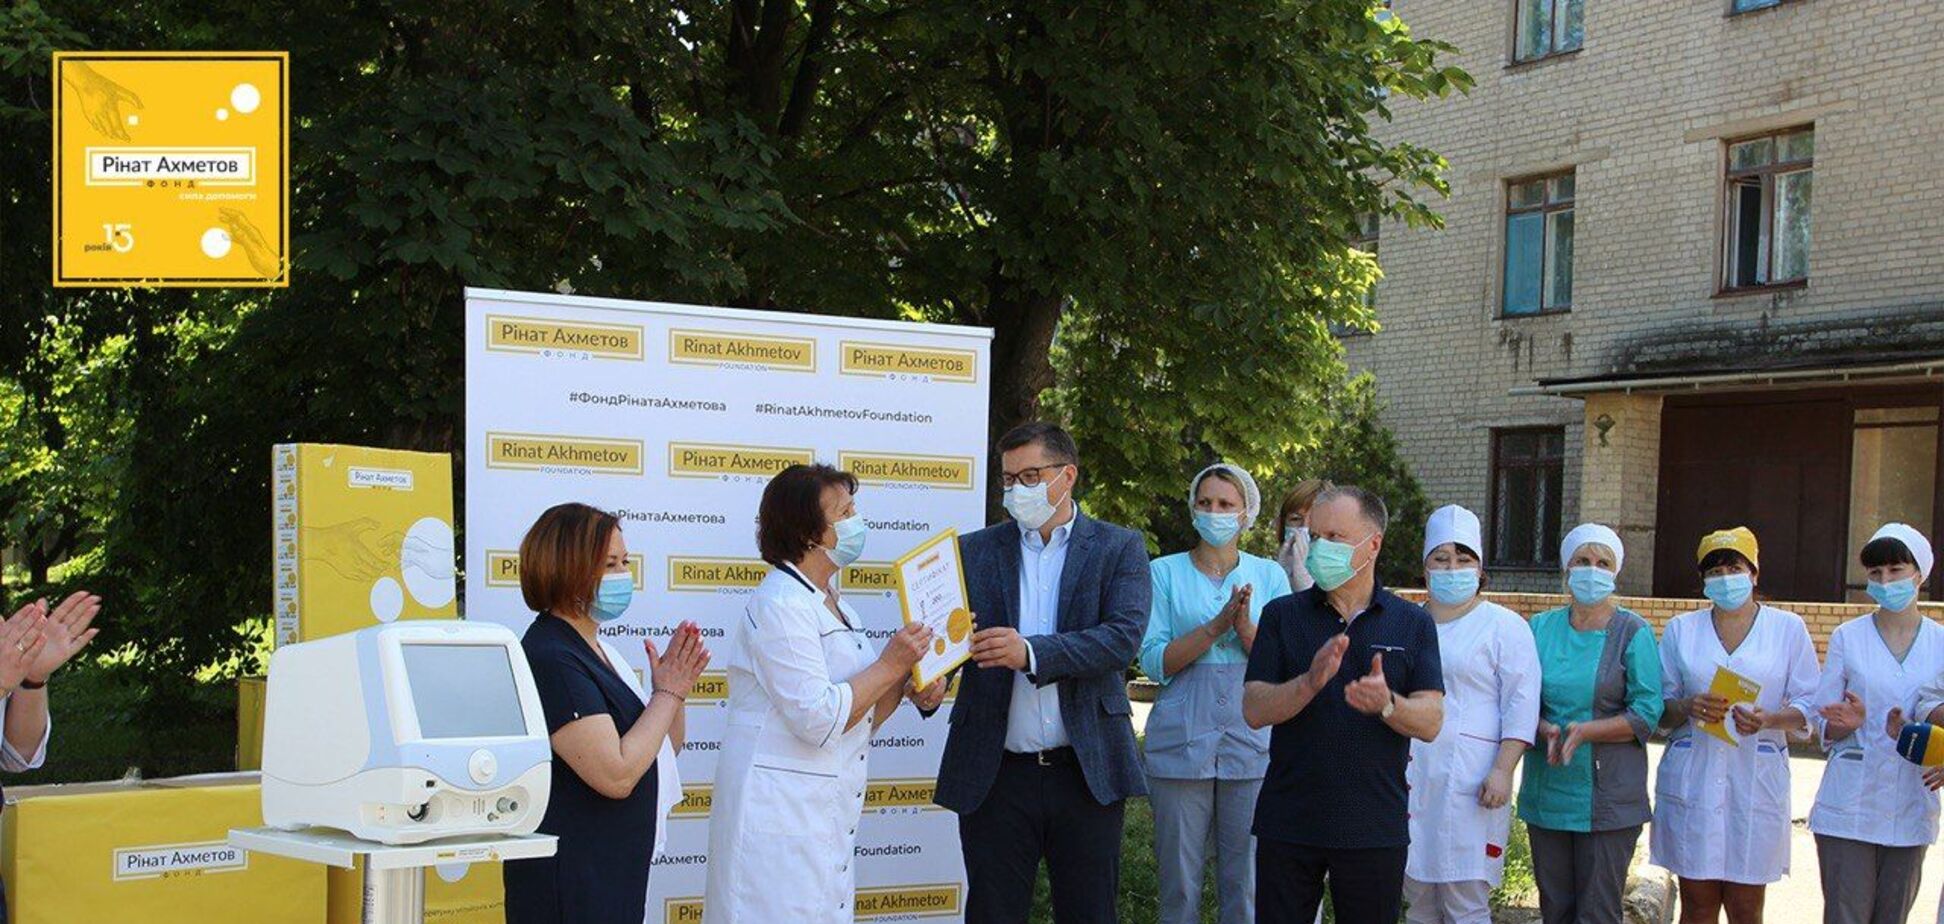 Фонд Рината Ахметова закупил 200 аппаратов ИВЛ: врачи объяснили их критическую важность